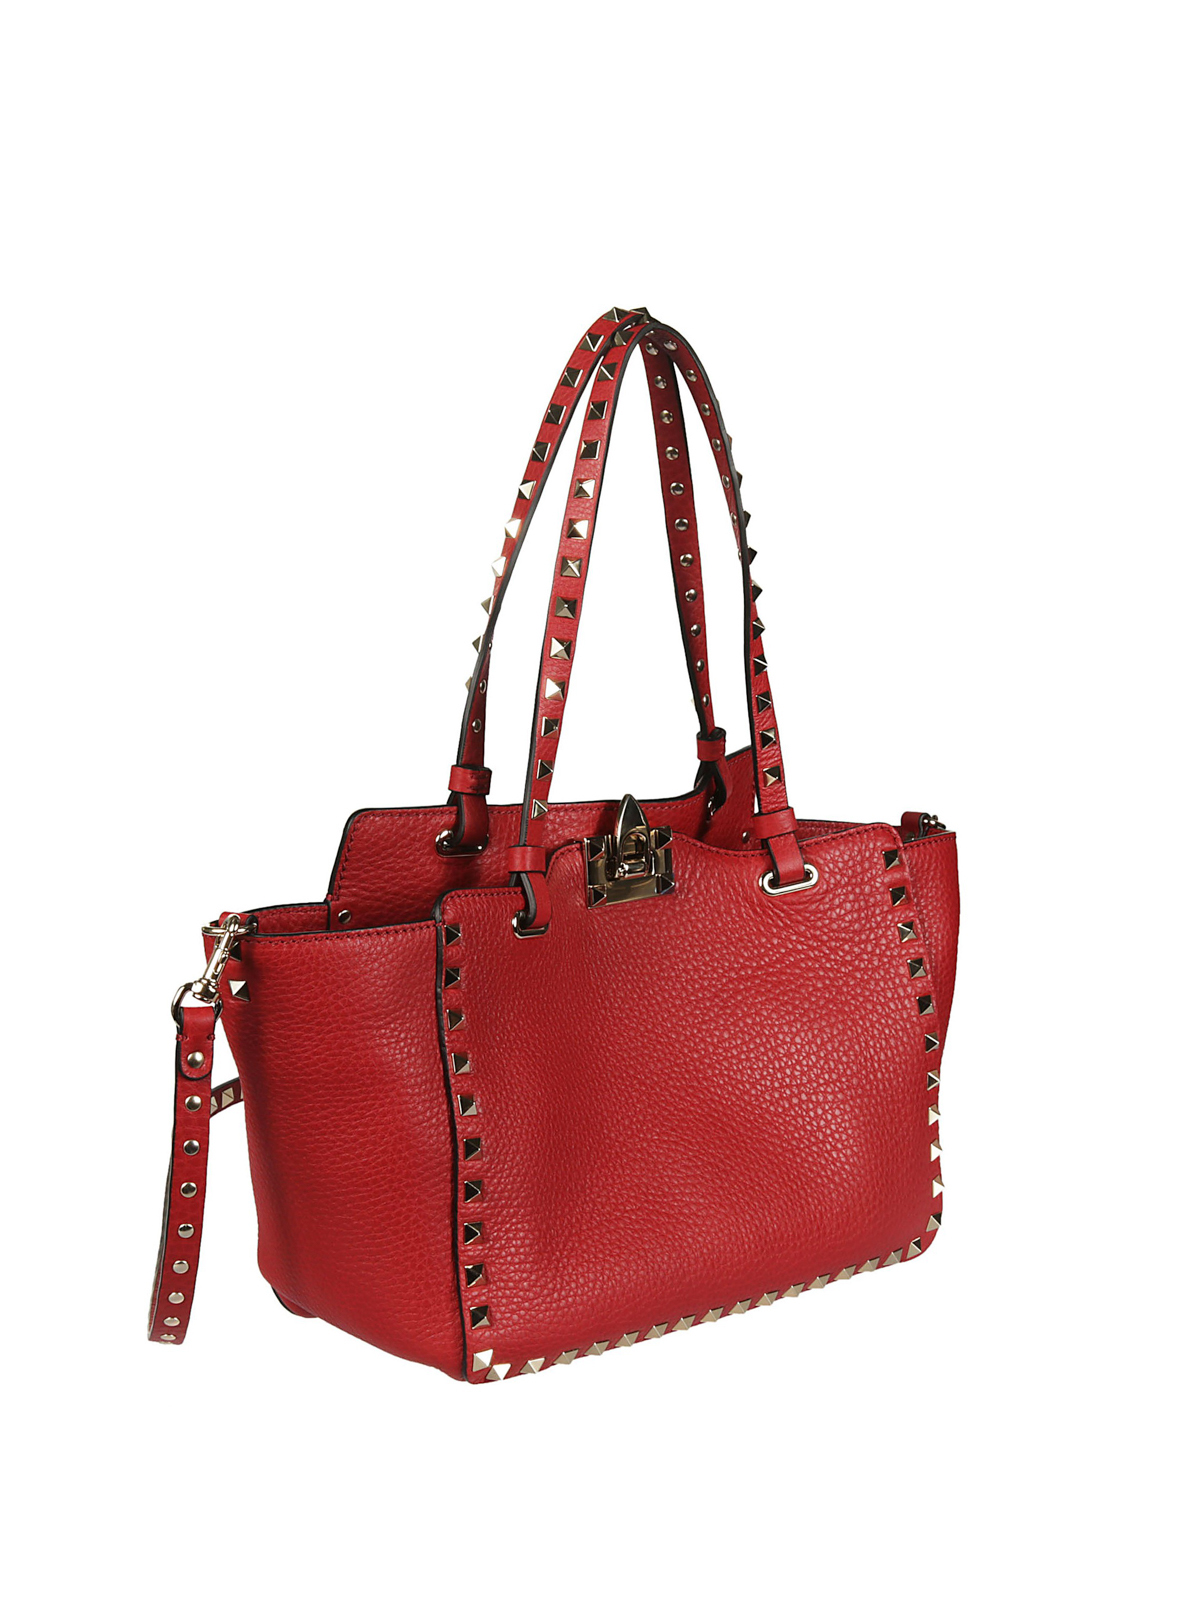 Totes bags Valentino Garavani - Rockstud small red bag - PW2B0037VSF0RO